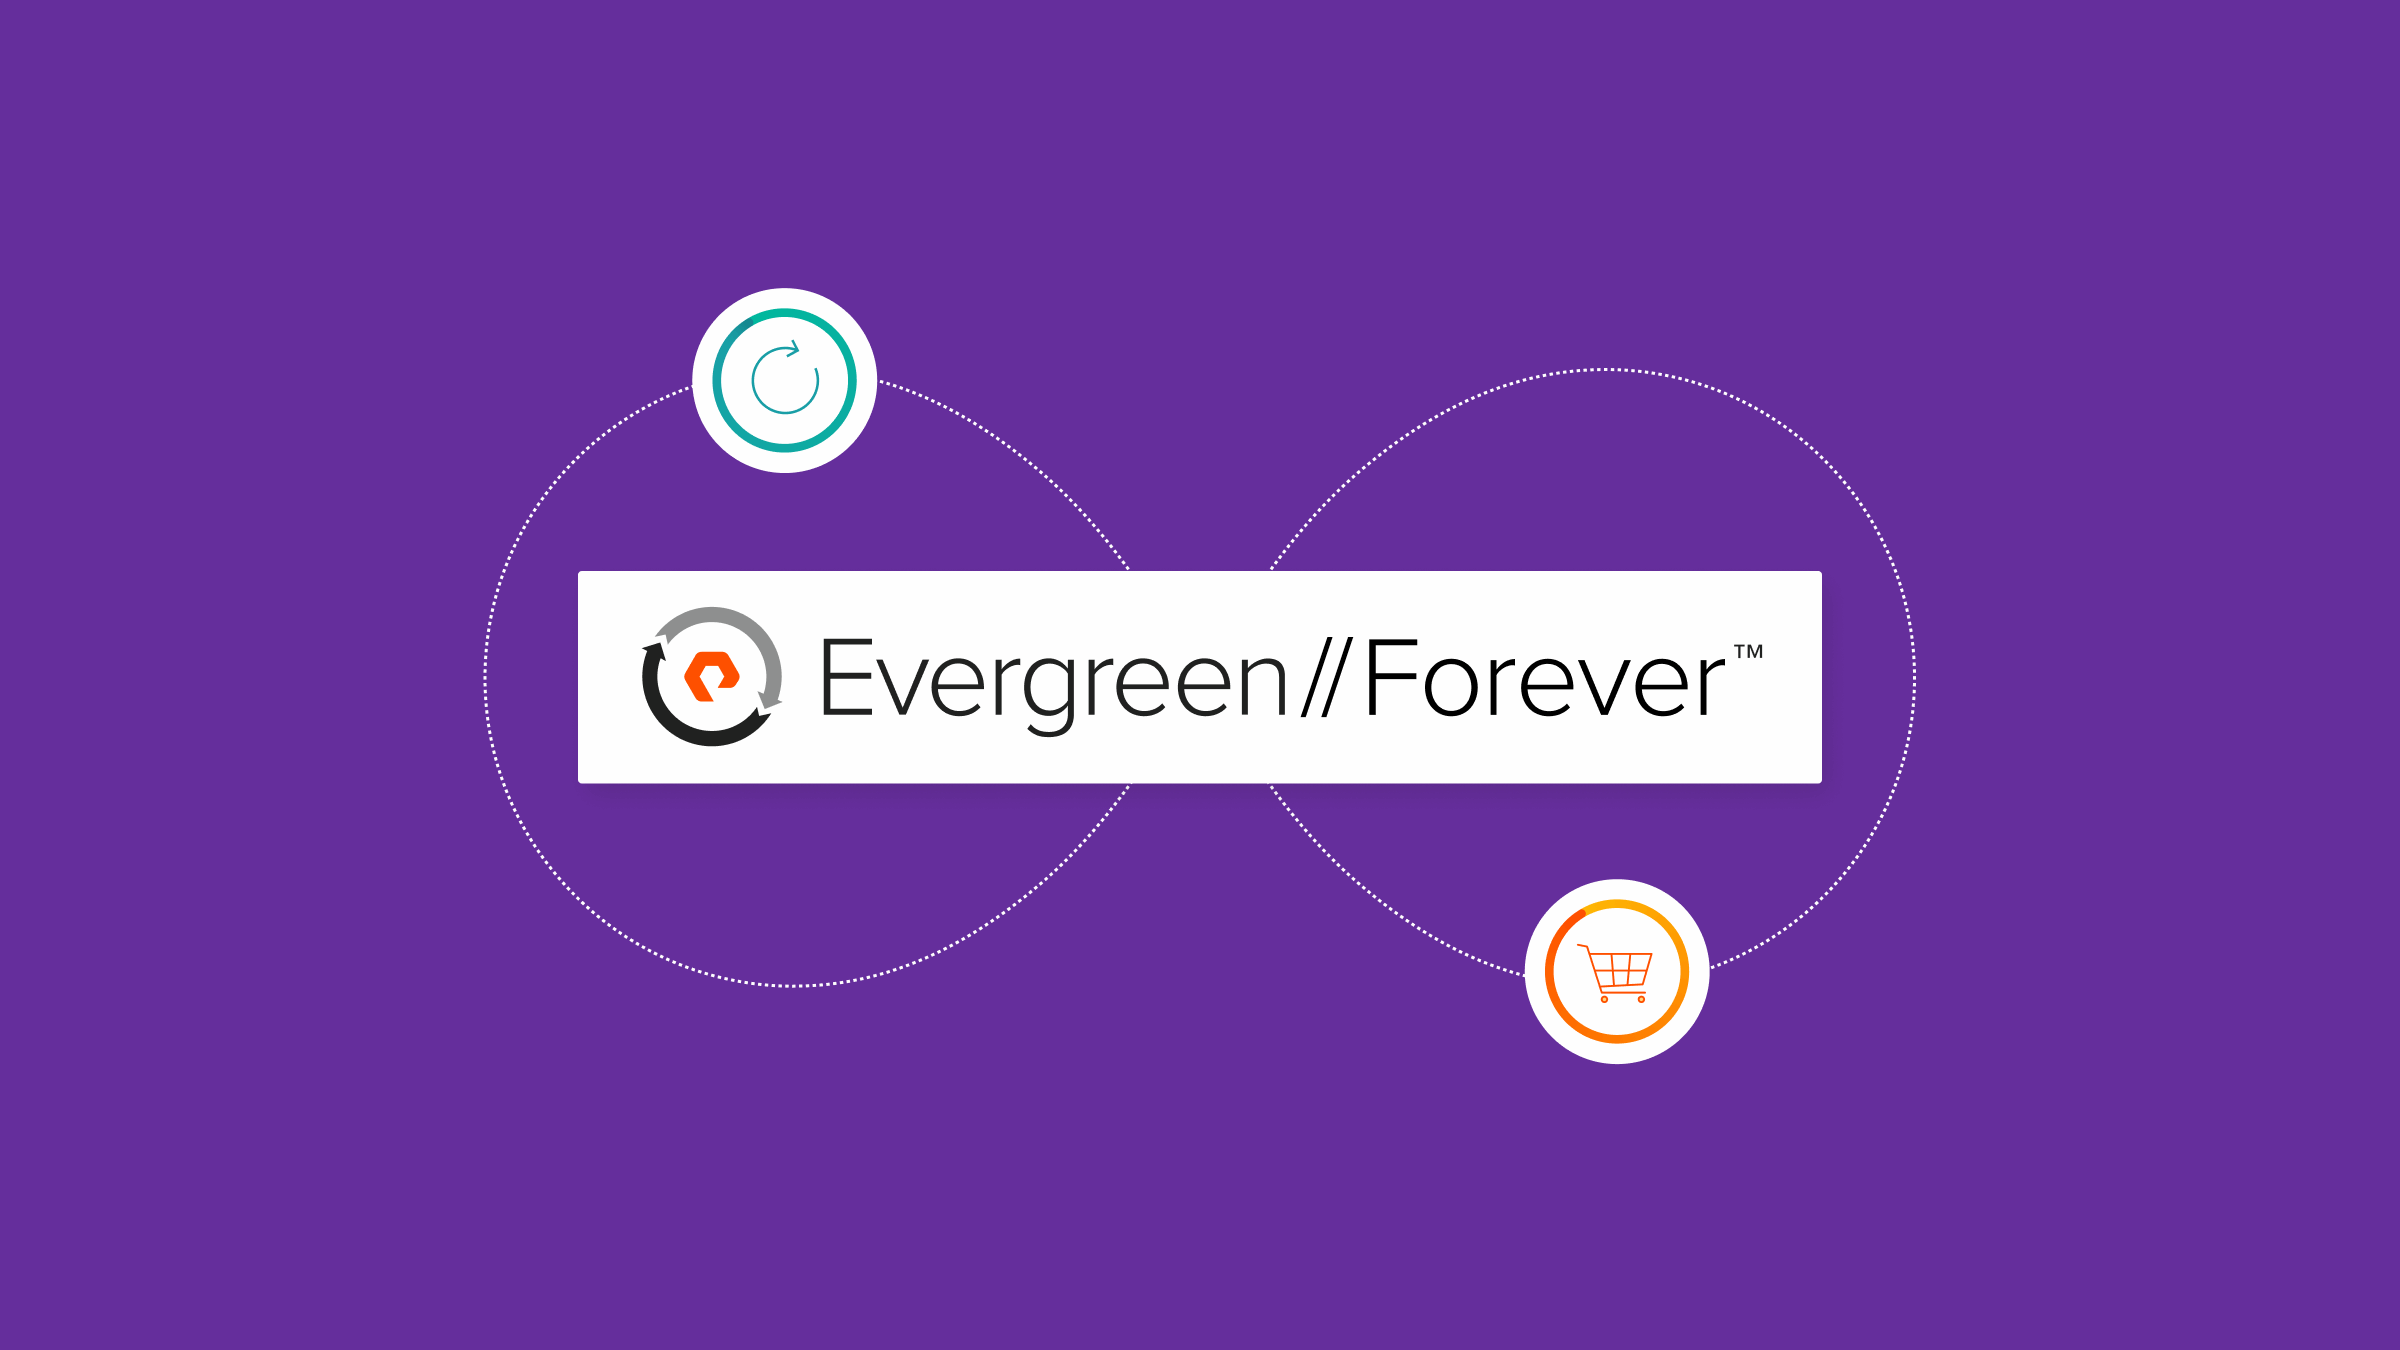 에버그린//포에버(Evergreen//Forever): 지속적인 혁신을 제공하는 구독 프로그램